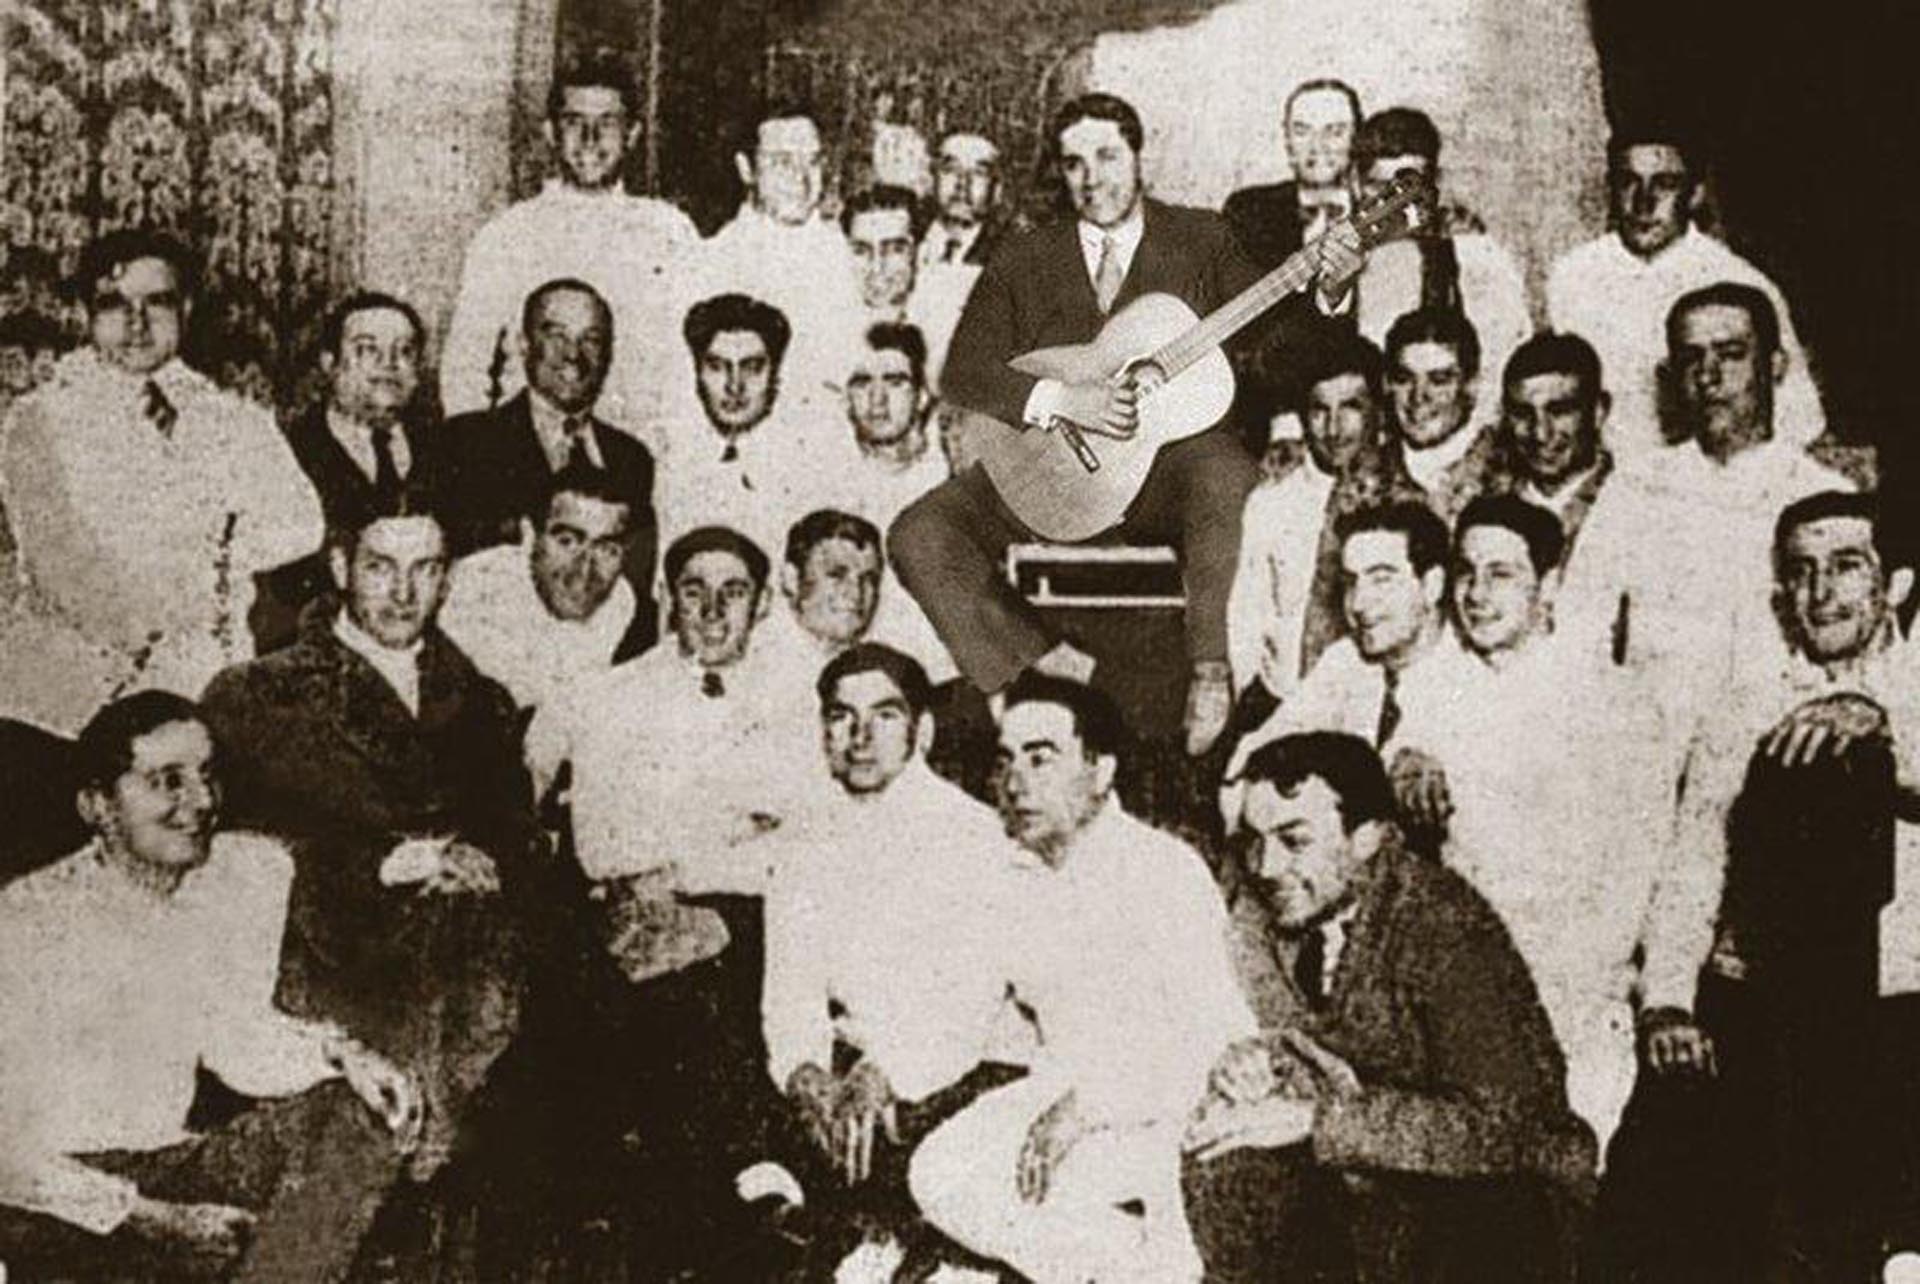 Gardel cantando en la concentración de Argentina dos días antes de la final del mundial Orsi esta sentado a la derecha del Mudo, 1930.